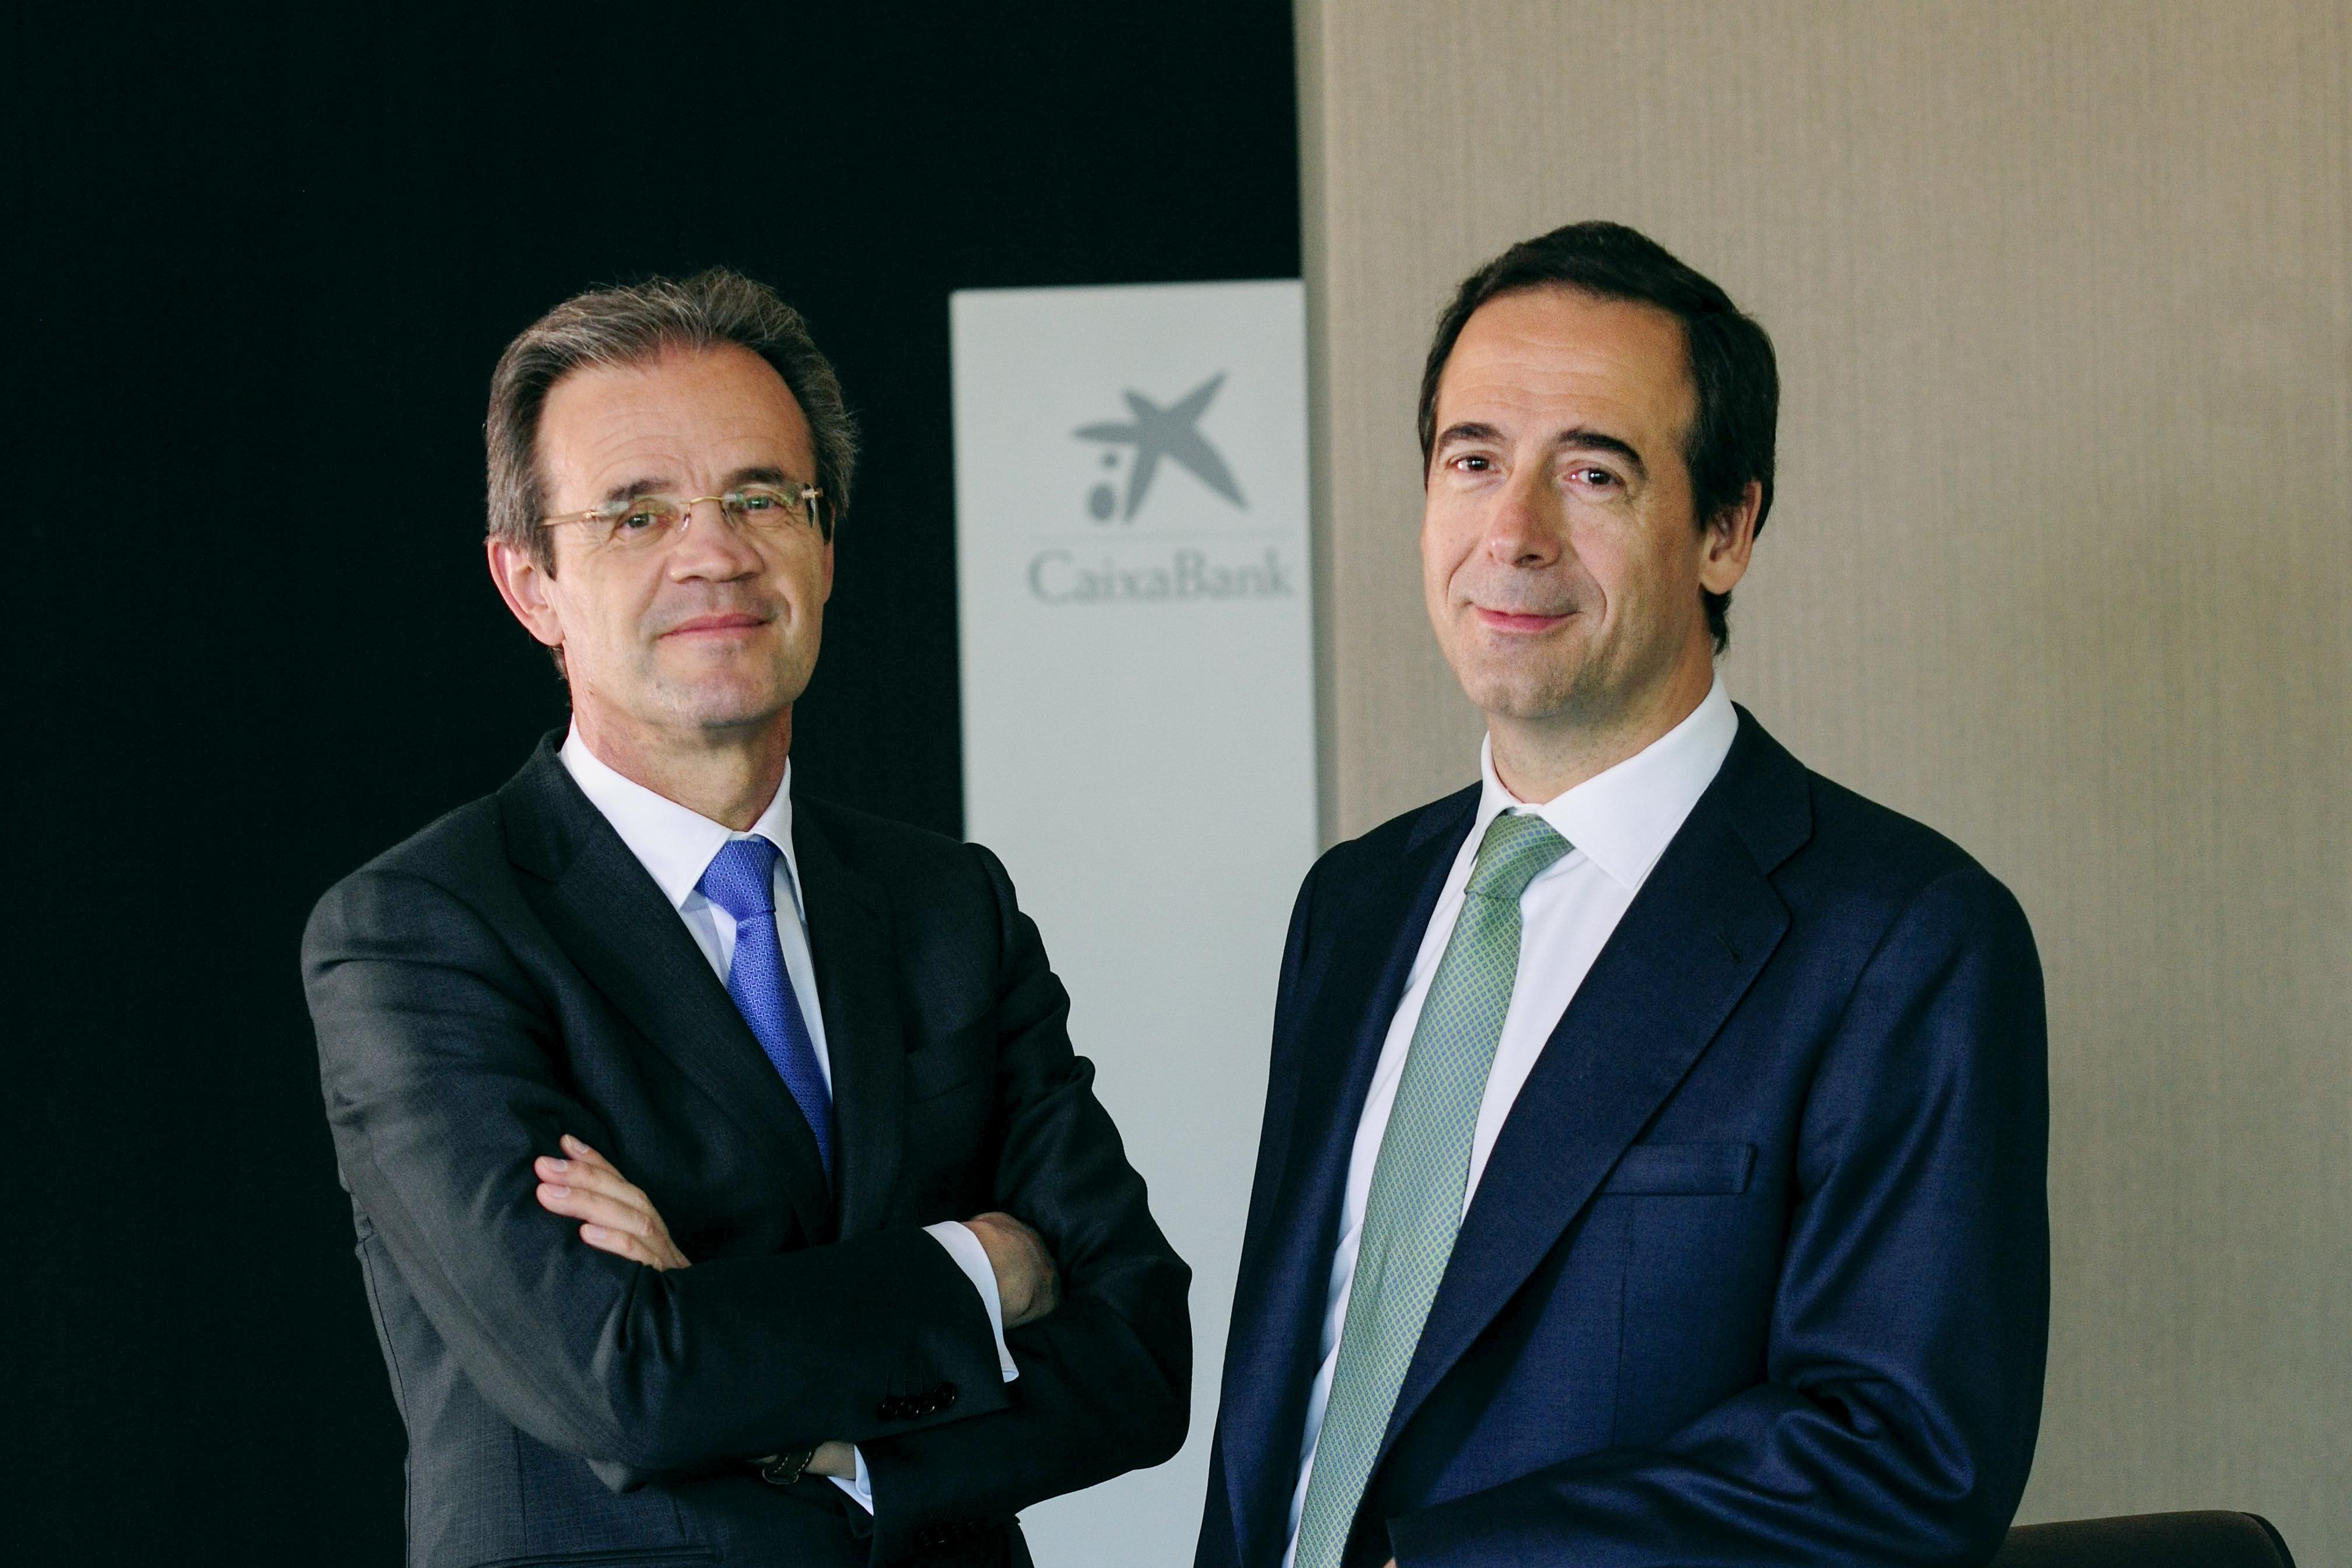 El presidente de CaixaBank, Jordi Gual, y el consejero delegado, Gonzalo Gortázar. (imagen facilitada por CaixaBank)